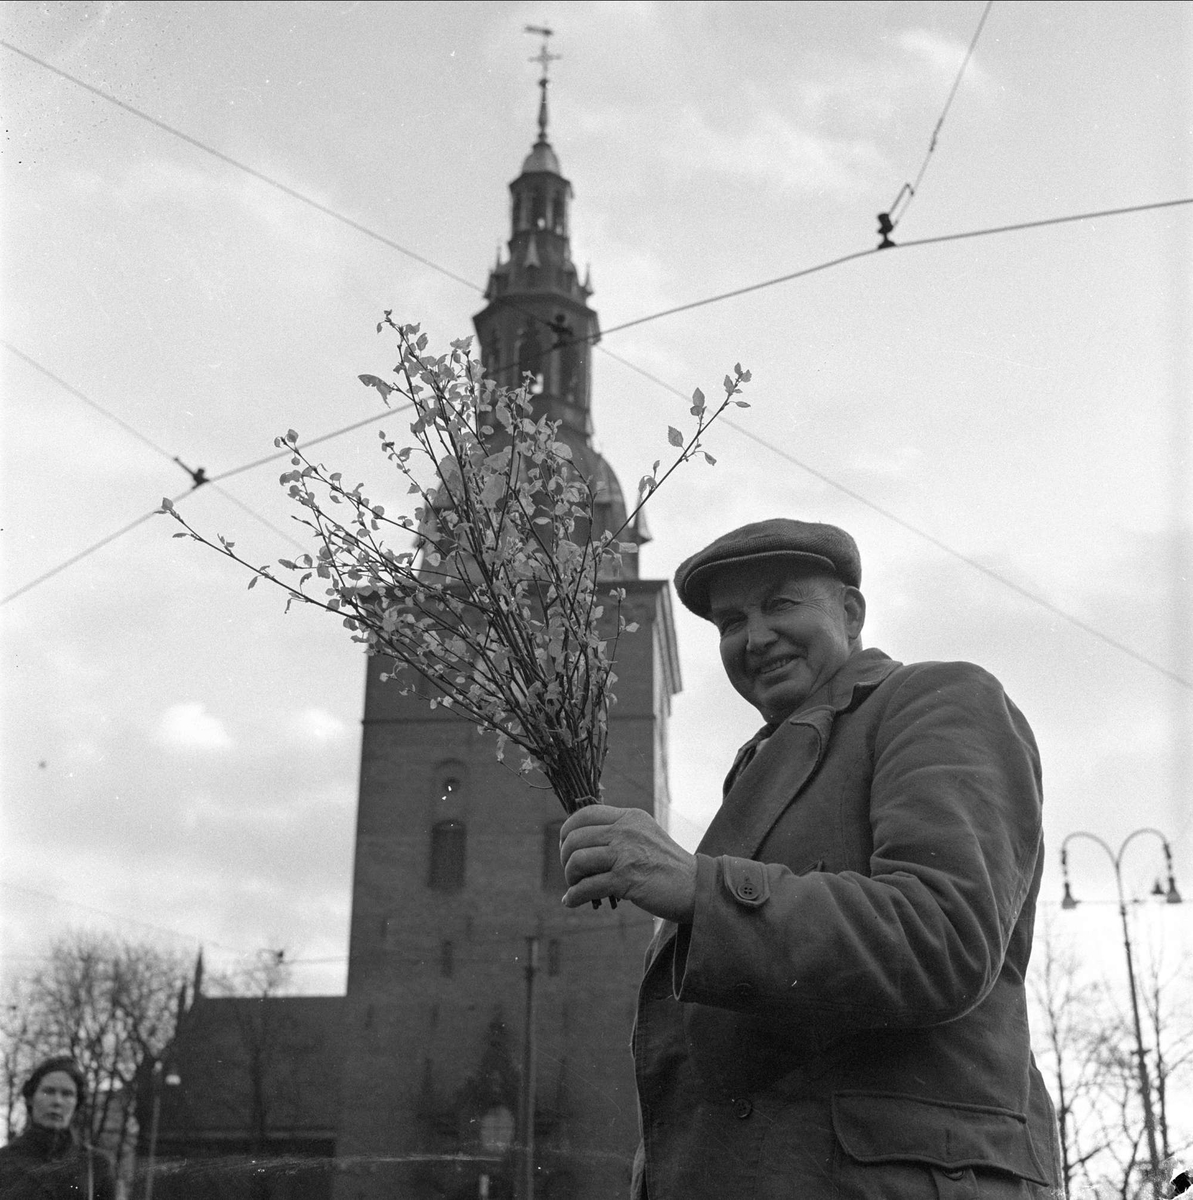 Salg av løv på Stortorget,  domkirken i bakgrunnen, Oslo, desember 1956